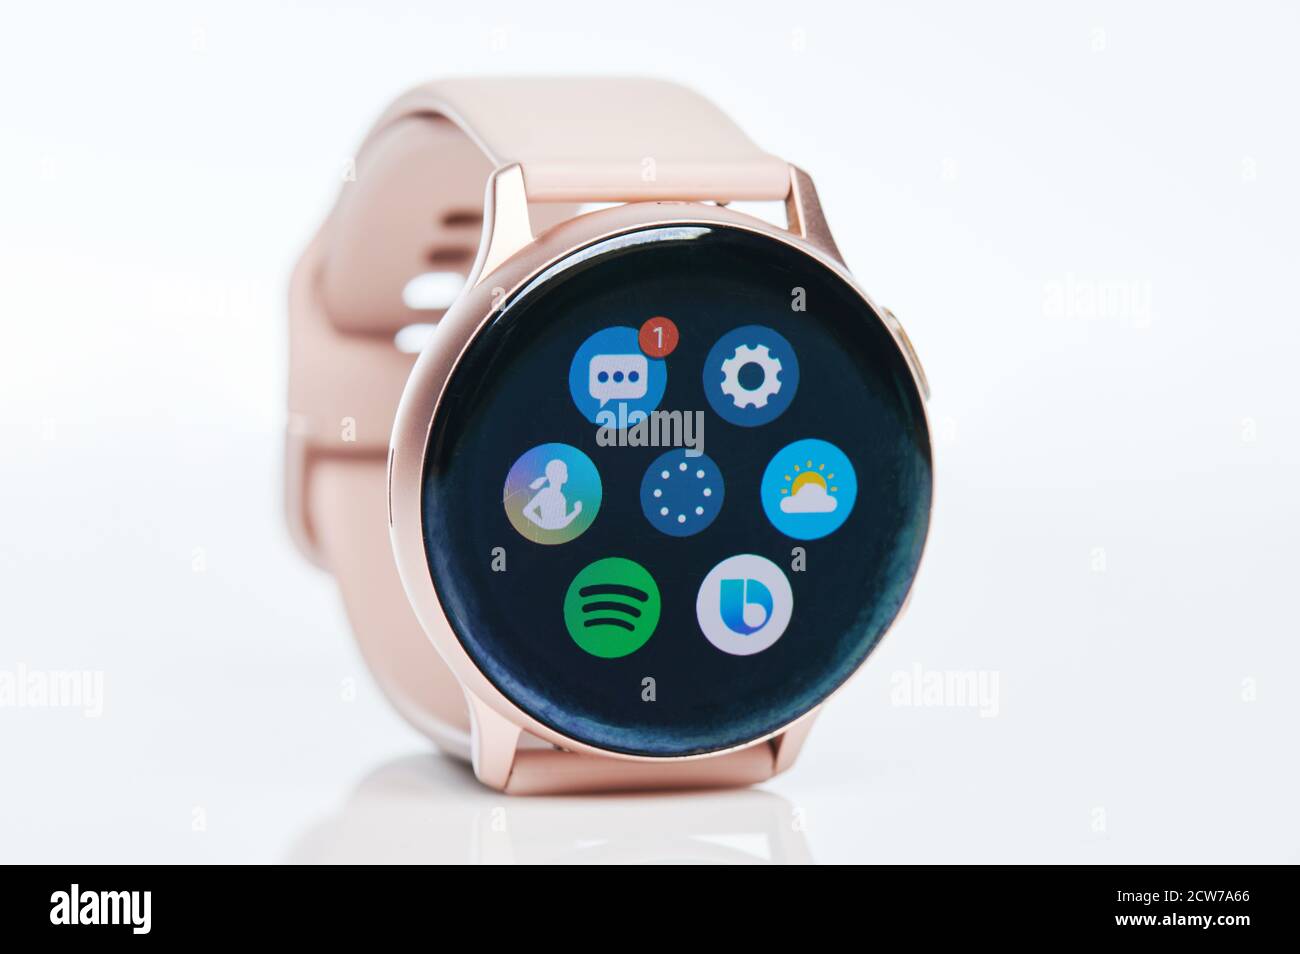 Samsung Galaxy Active 2 Watch là một trong những chiếc đồng hồ thông minh tốt nhất trên thị trường hiện nay. Tìm hiểu thêm về những tính năng tuyệt vời của chiếc đồng hồ thông minh này với Samsung Galaxy Active 2 Watch Review.